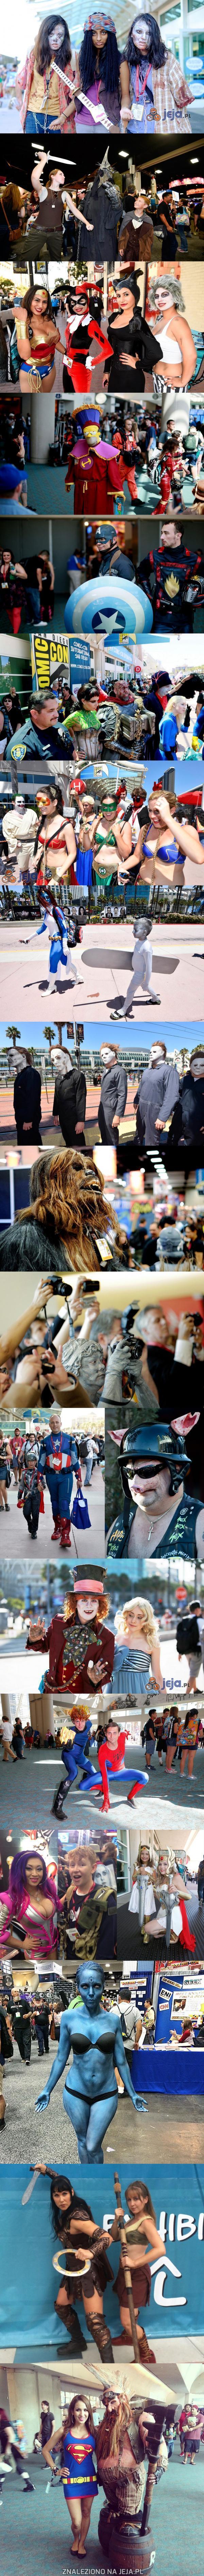 Zdjęcia cosplay'erów z Comic Conu 2014